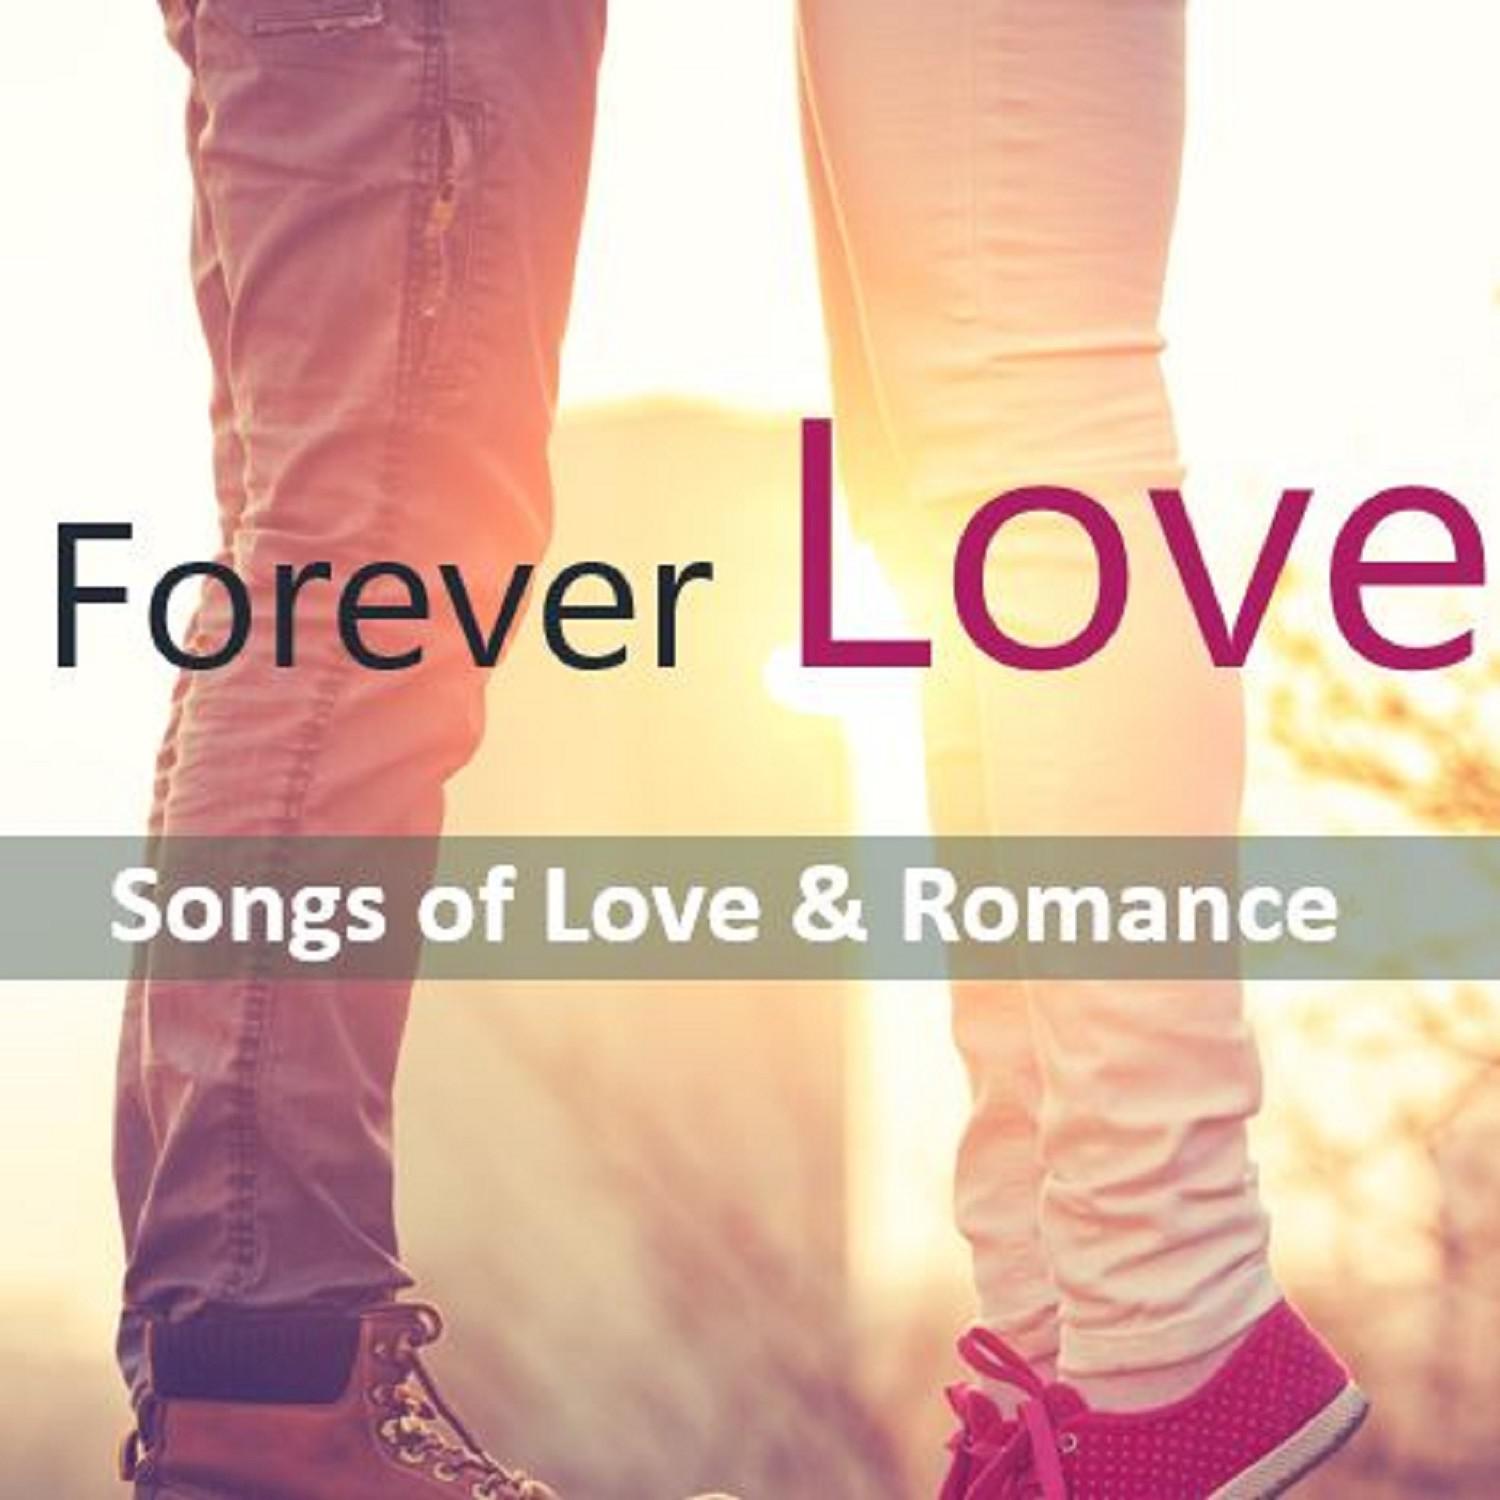 Forever Love: Songs of Love & Romance